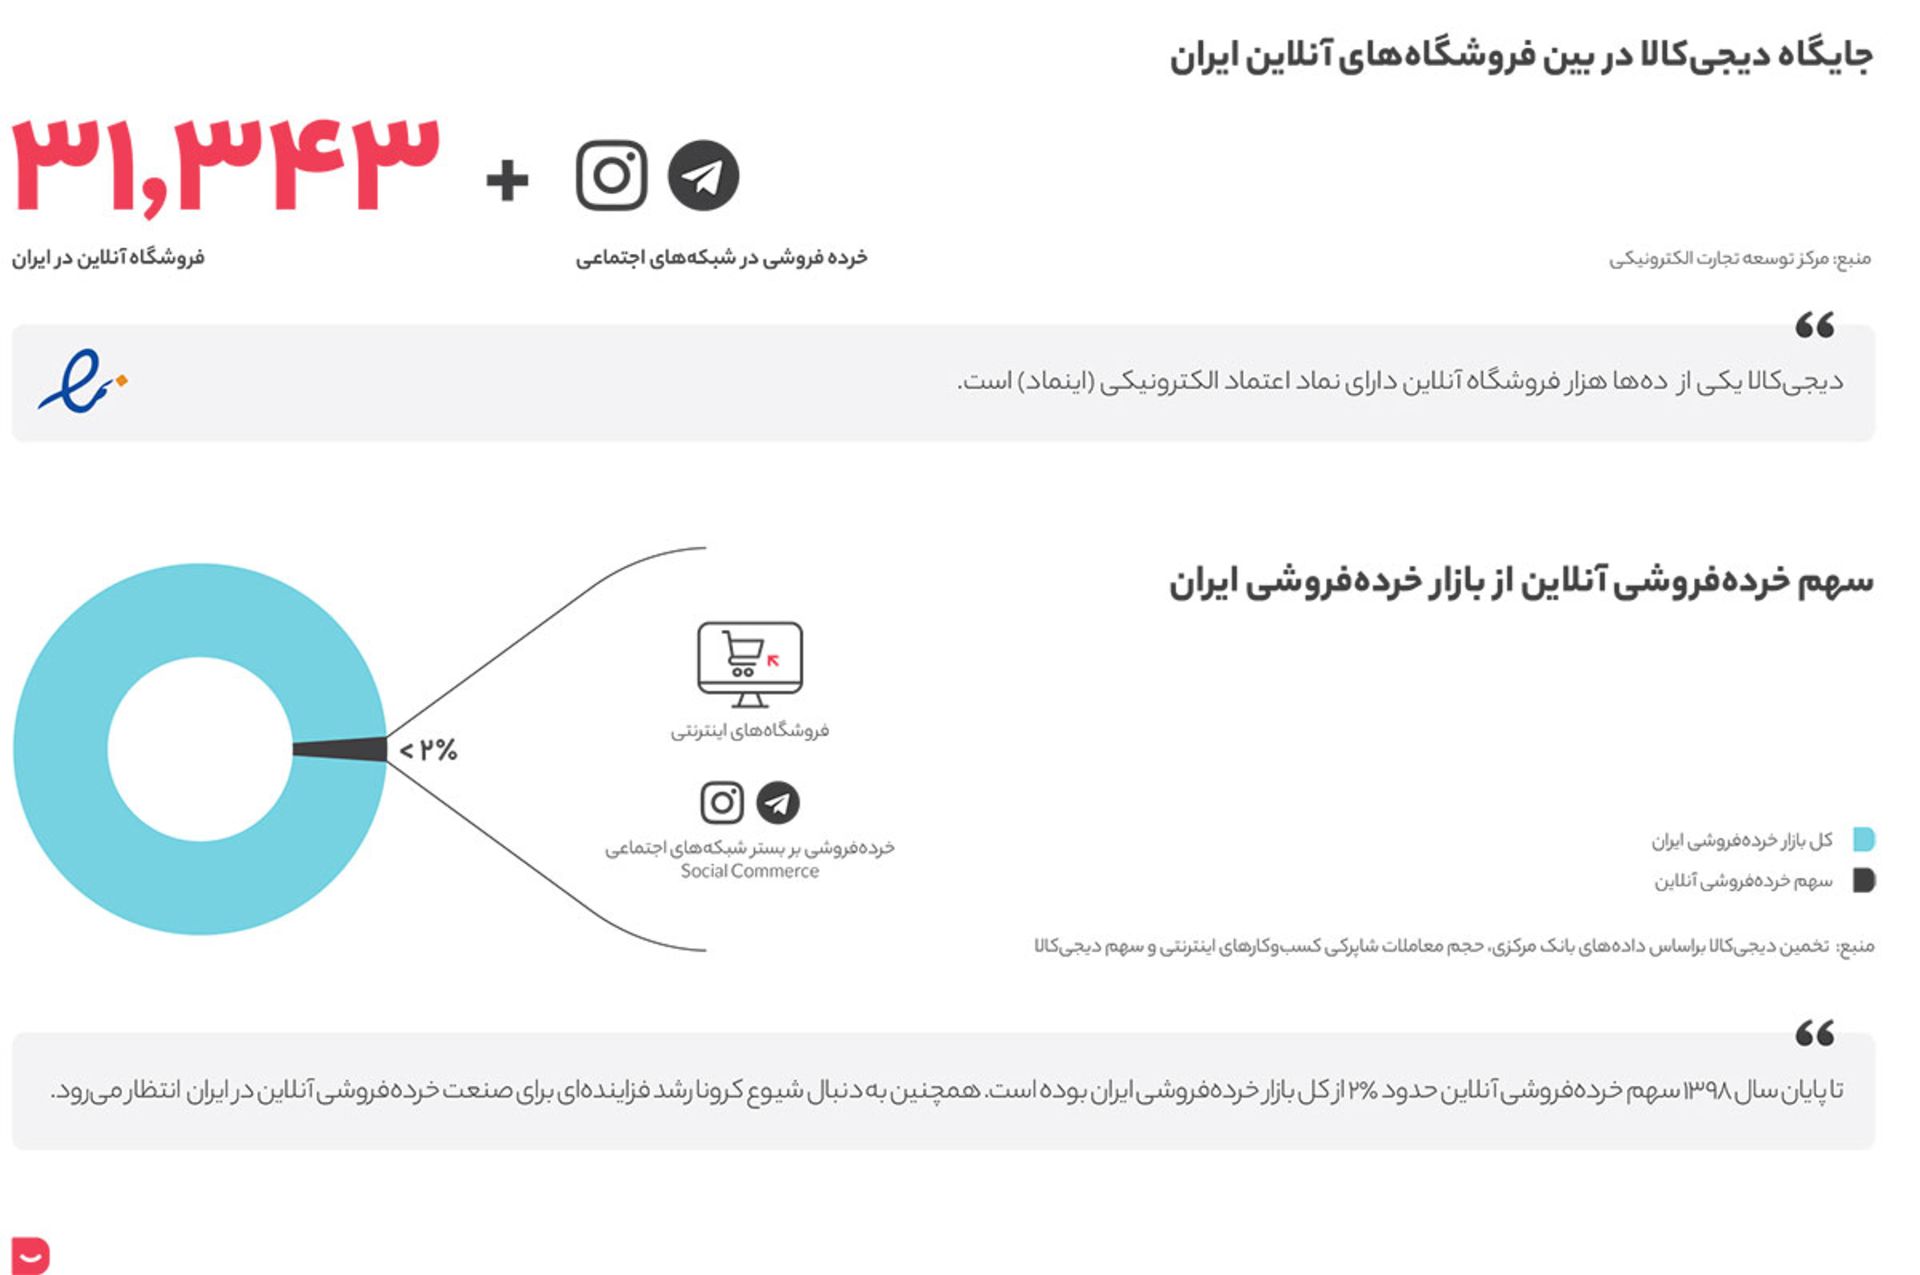 سهم خرده فروشی آنلاین از کل خرده فروشی در ایران